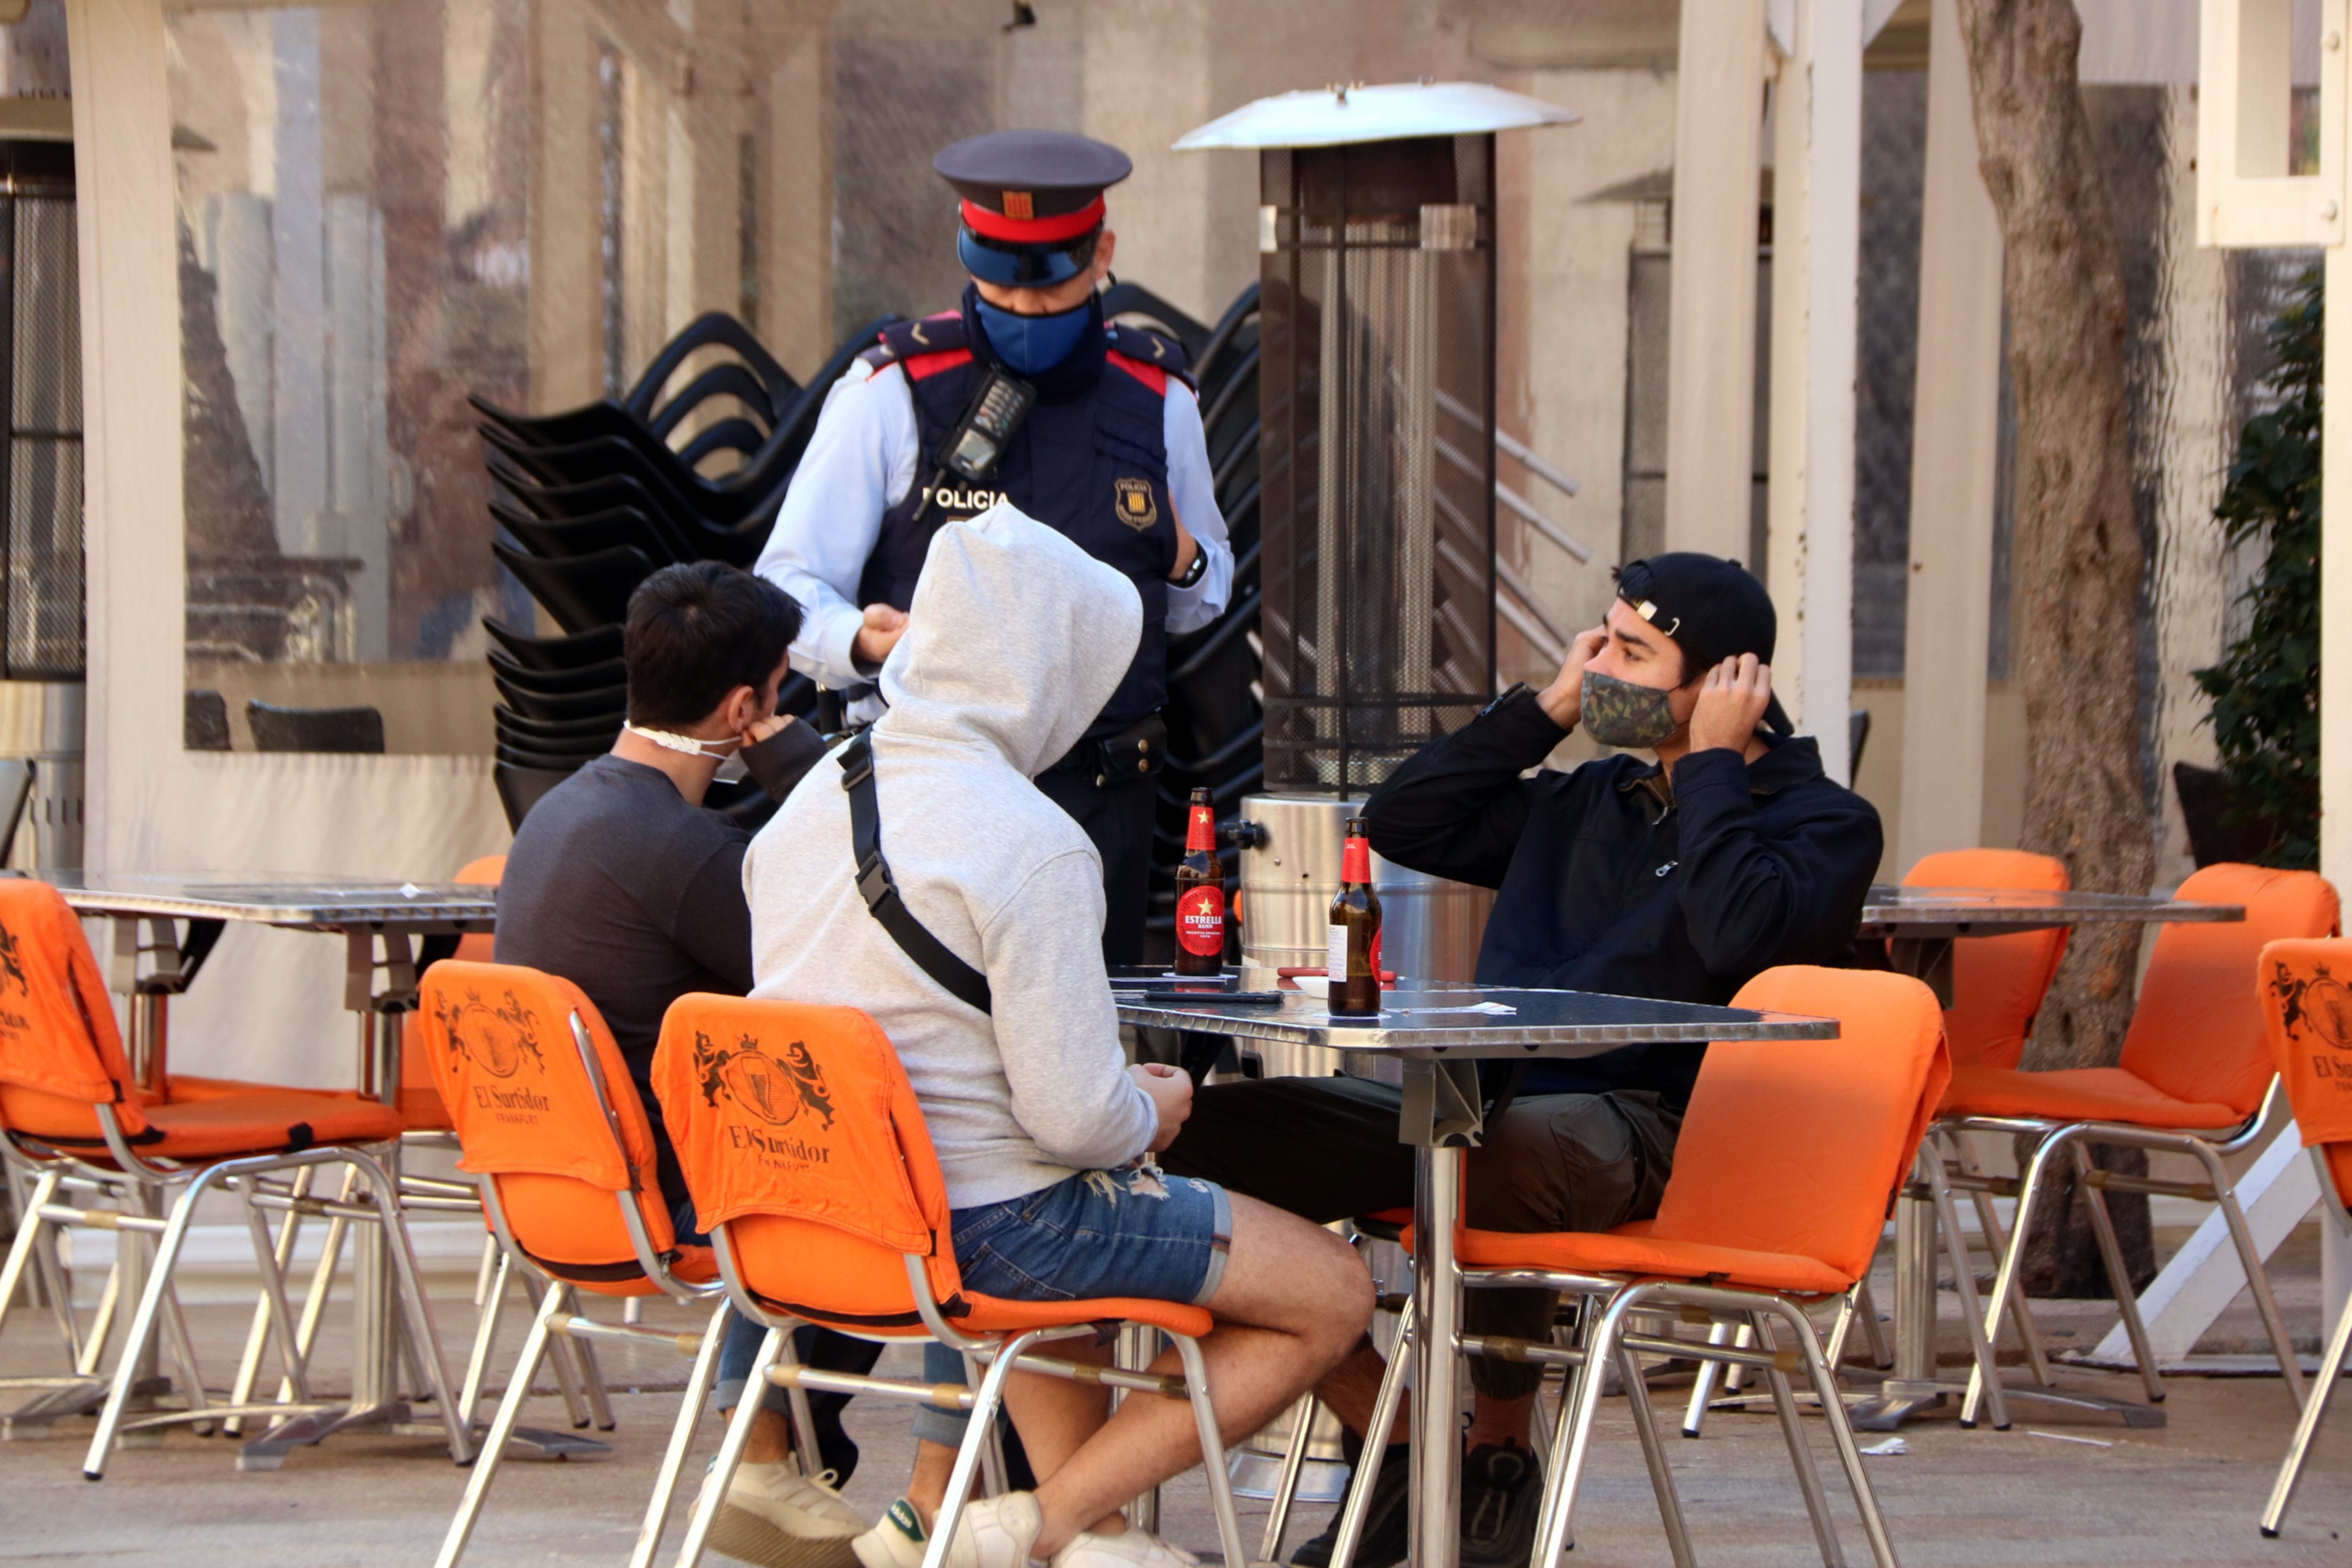 La Policia de Girona posa 16 denúncies a dos bars per saltar-se les mesures anti-Covid